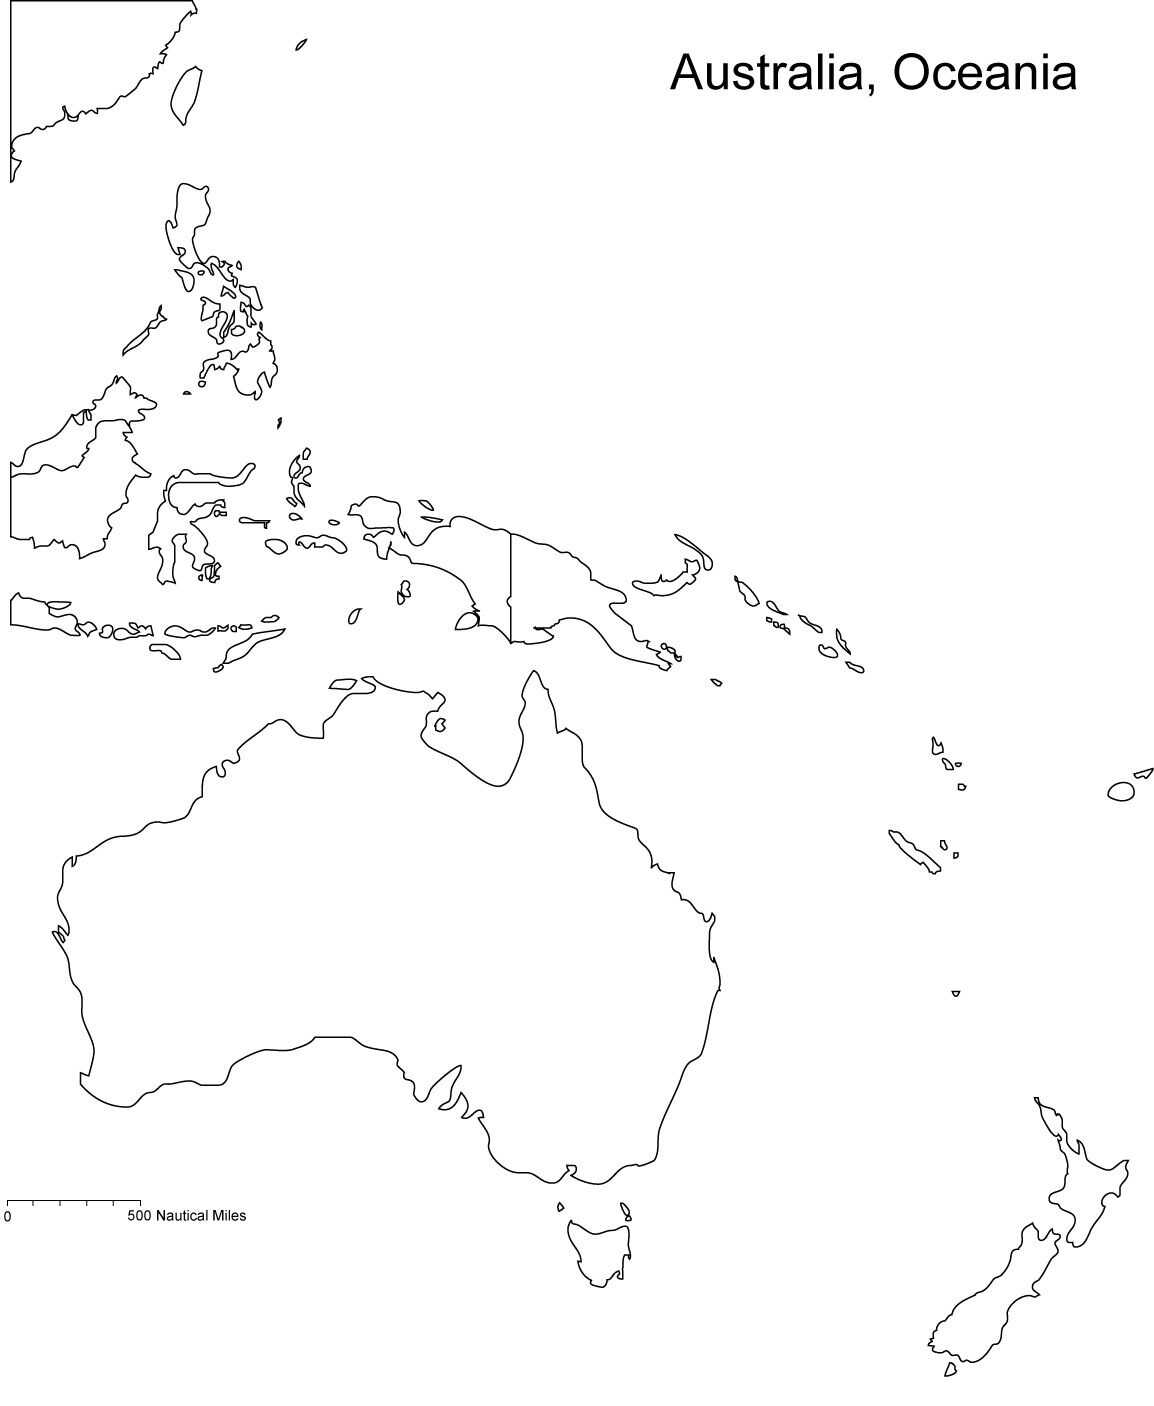 خريطة قارات أستراليا وأوقيانوسيا من خريطة العالم